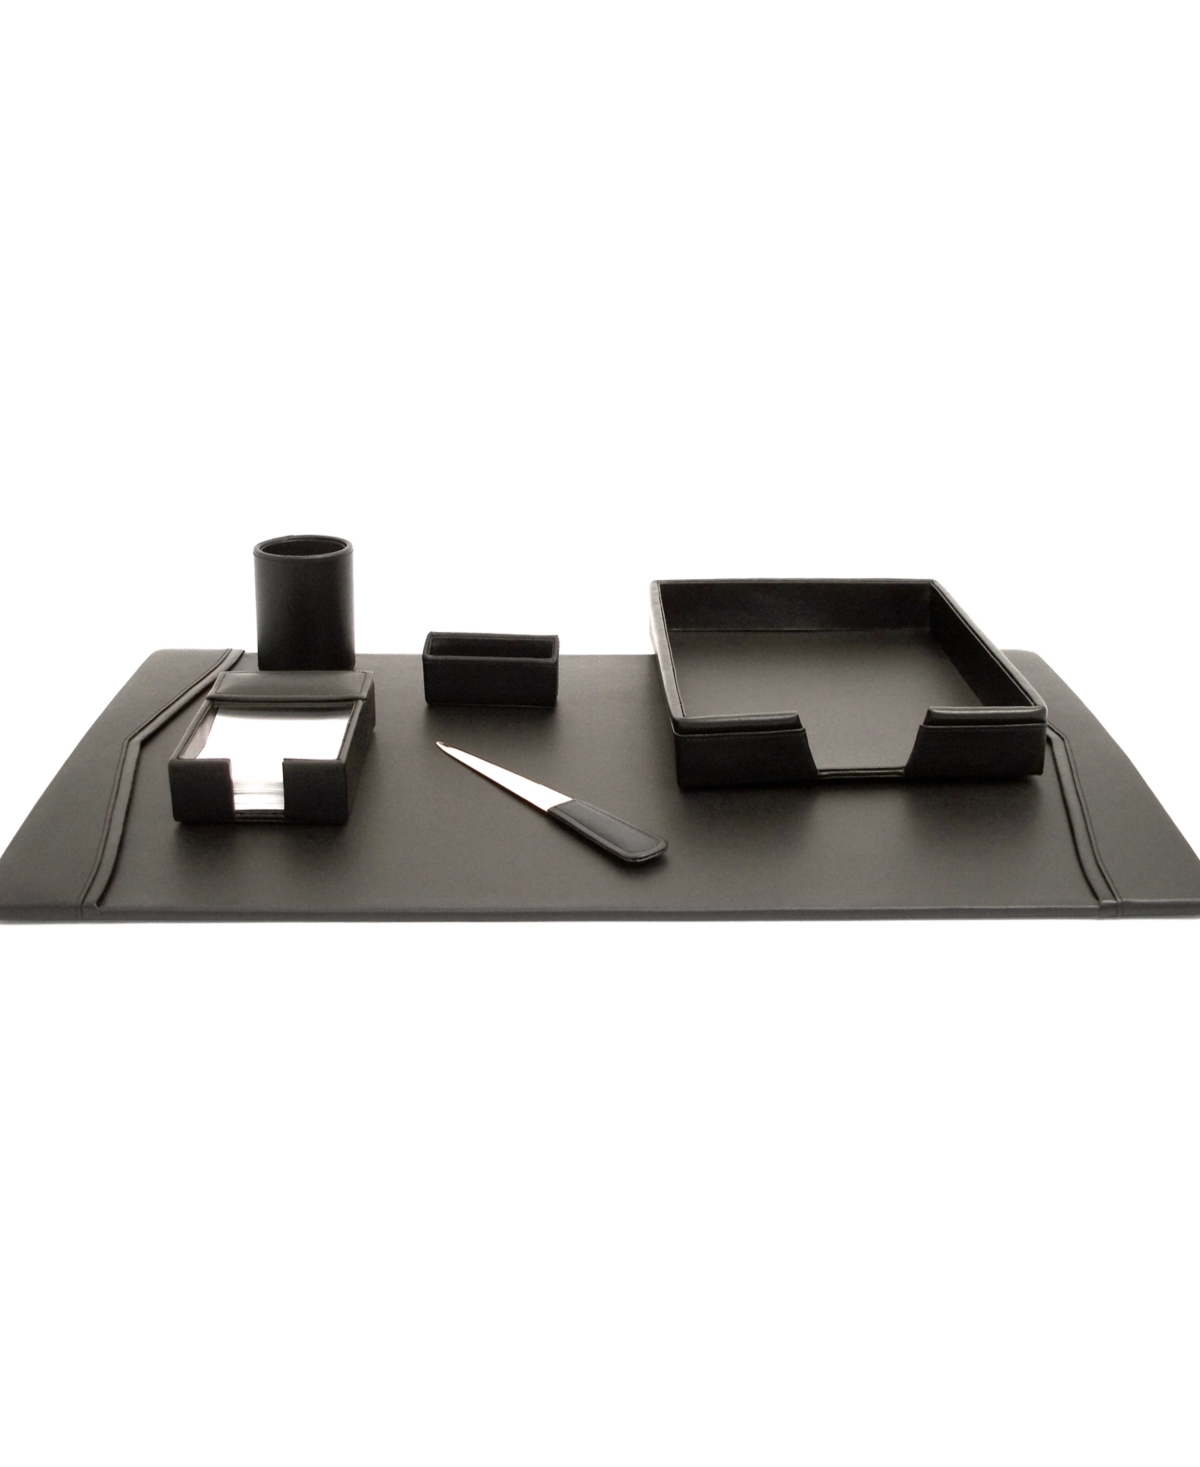 Leather 6 Piece Desk Set - Black